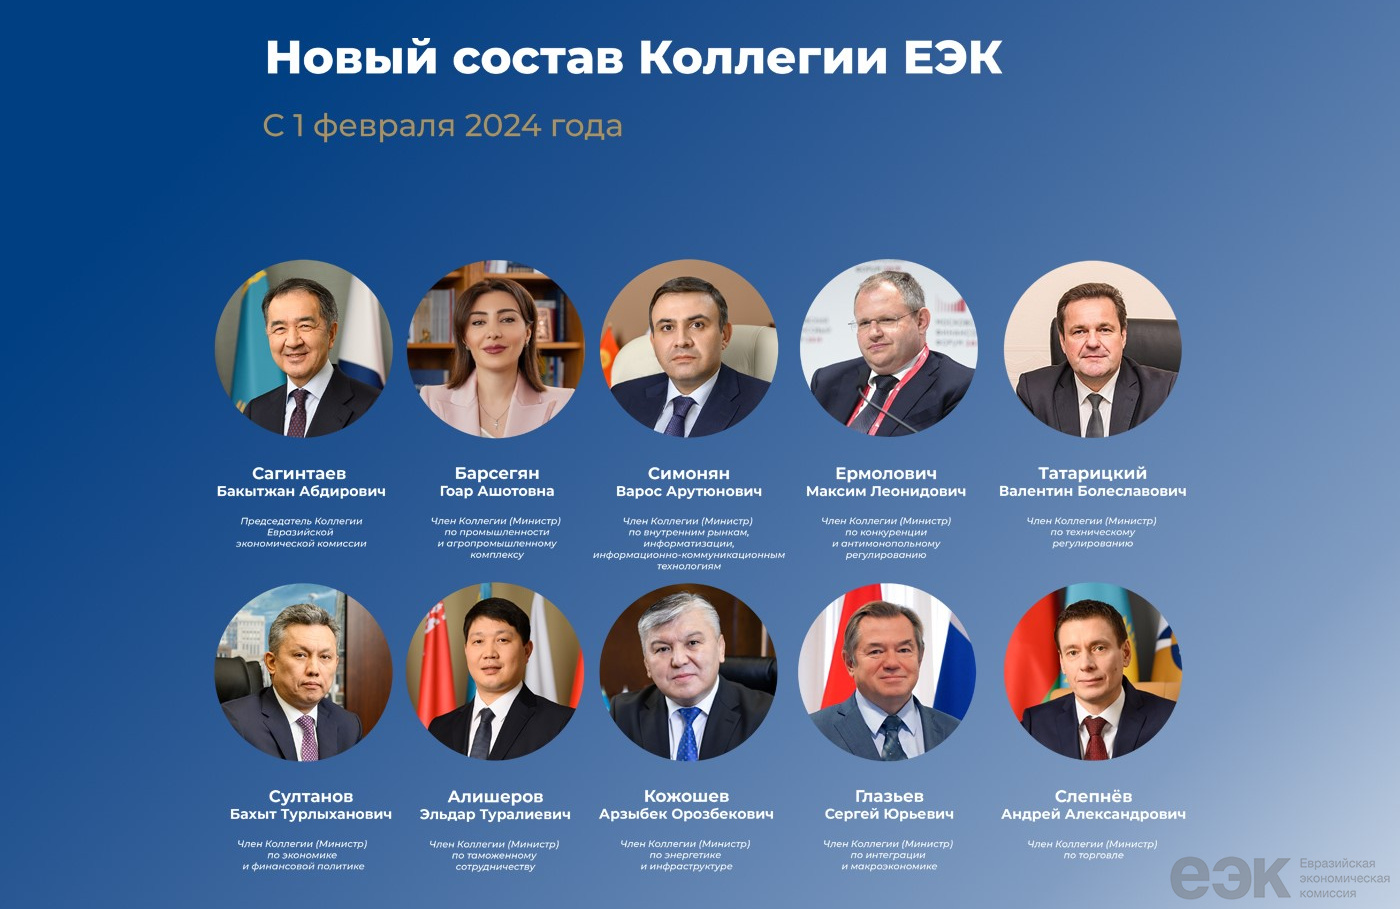 Новый состав Коллегии ЕЭК приступил к работе — список министров